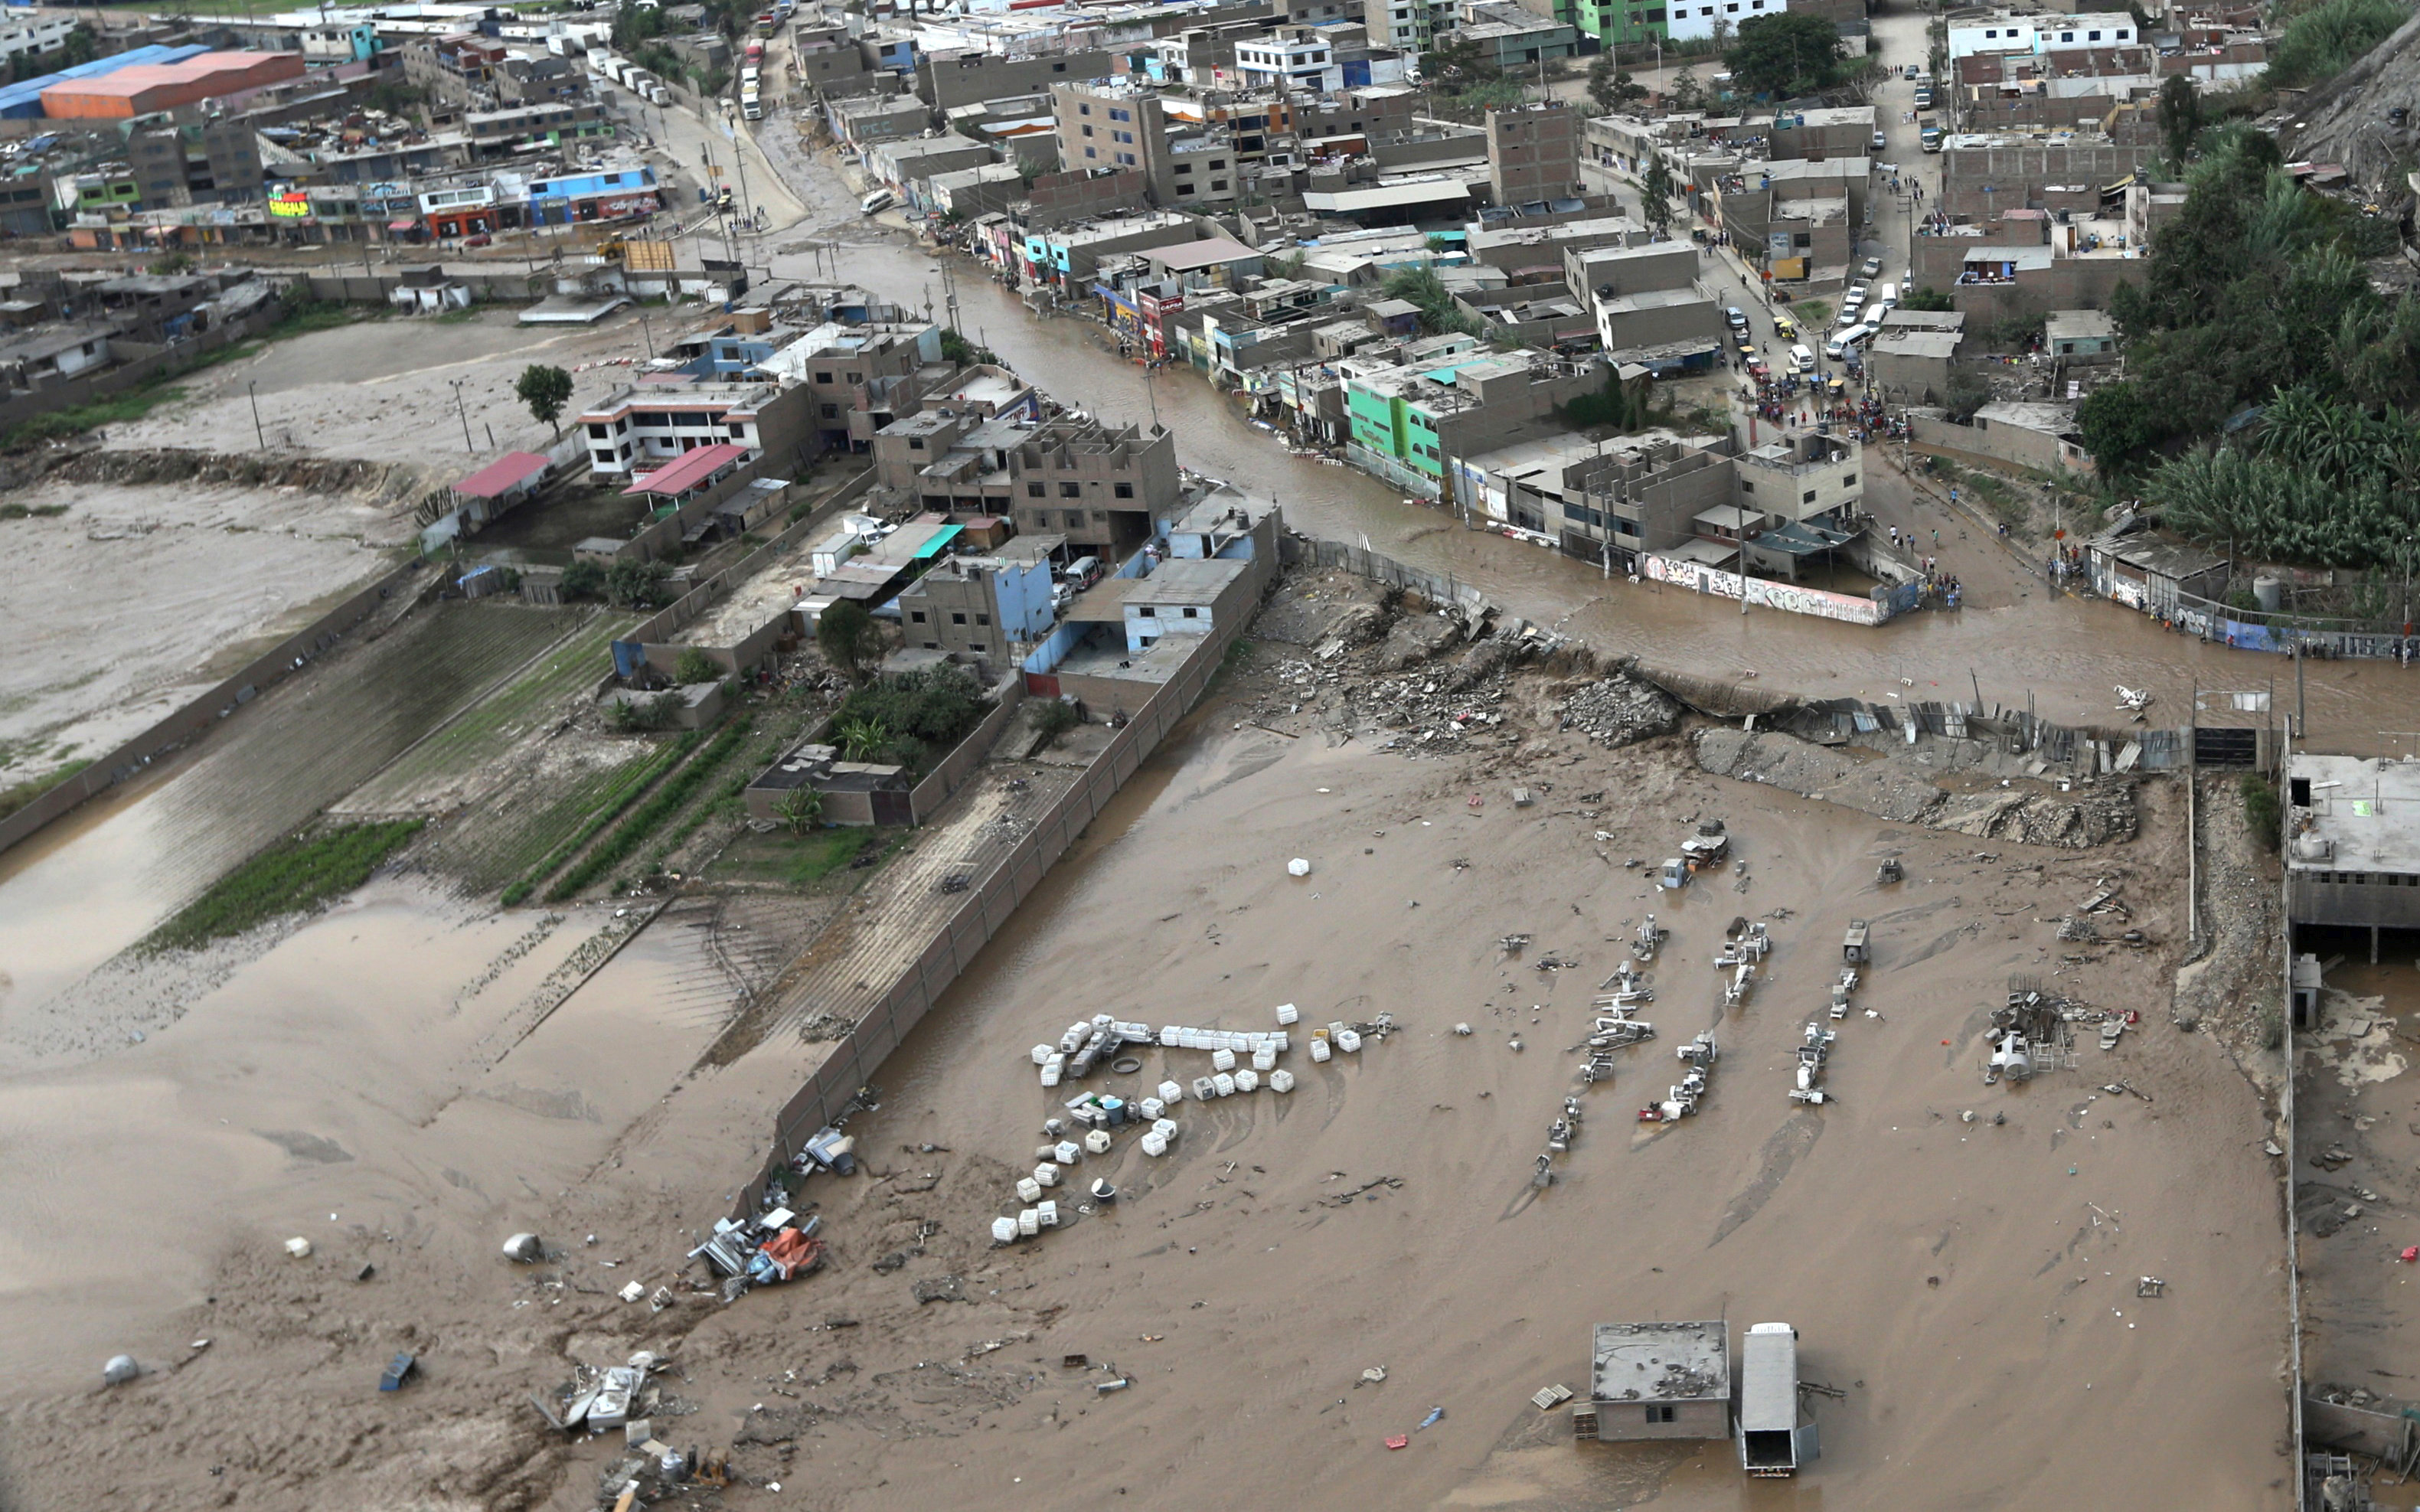 El fenómeno climático ha dejado 72 muertos y más de 70 mil damnificados en varias ciudades de la costa de Perú con intensas lluvias, desbordes de ríos, inundaciones y avalanchas.